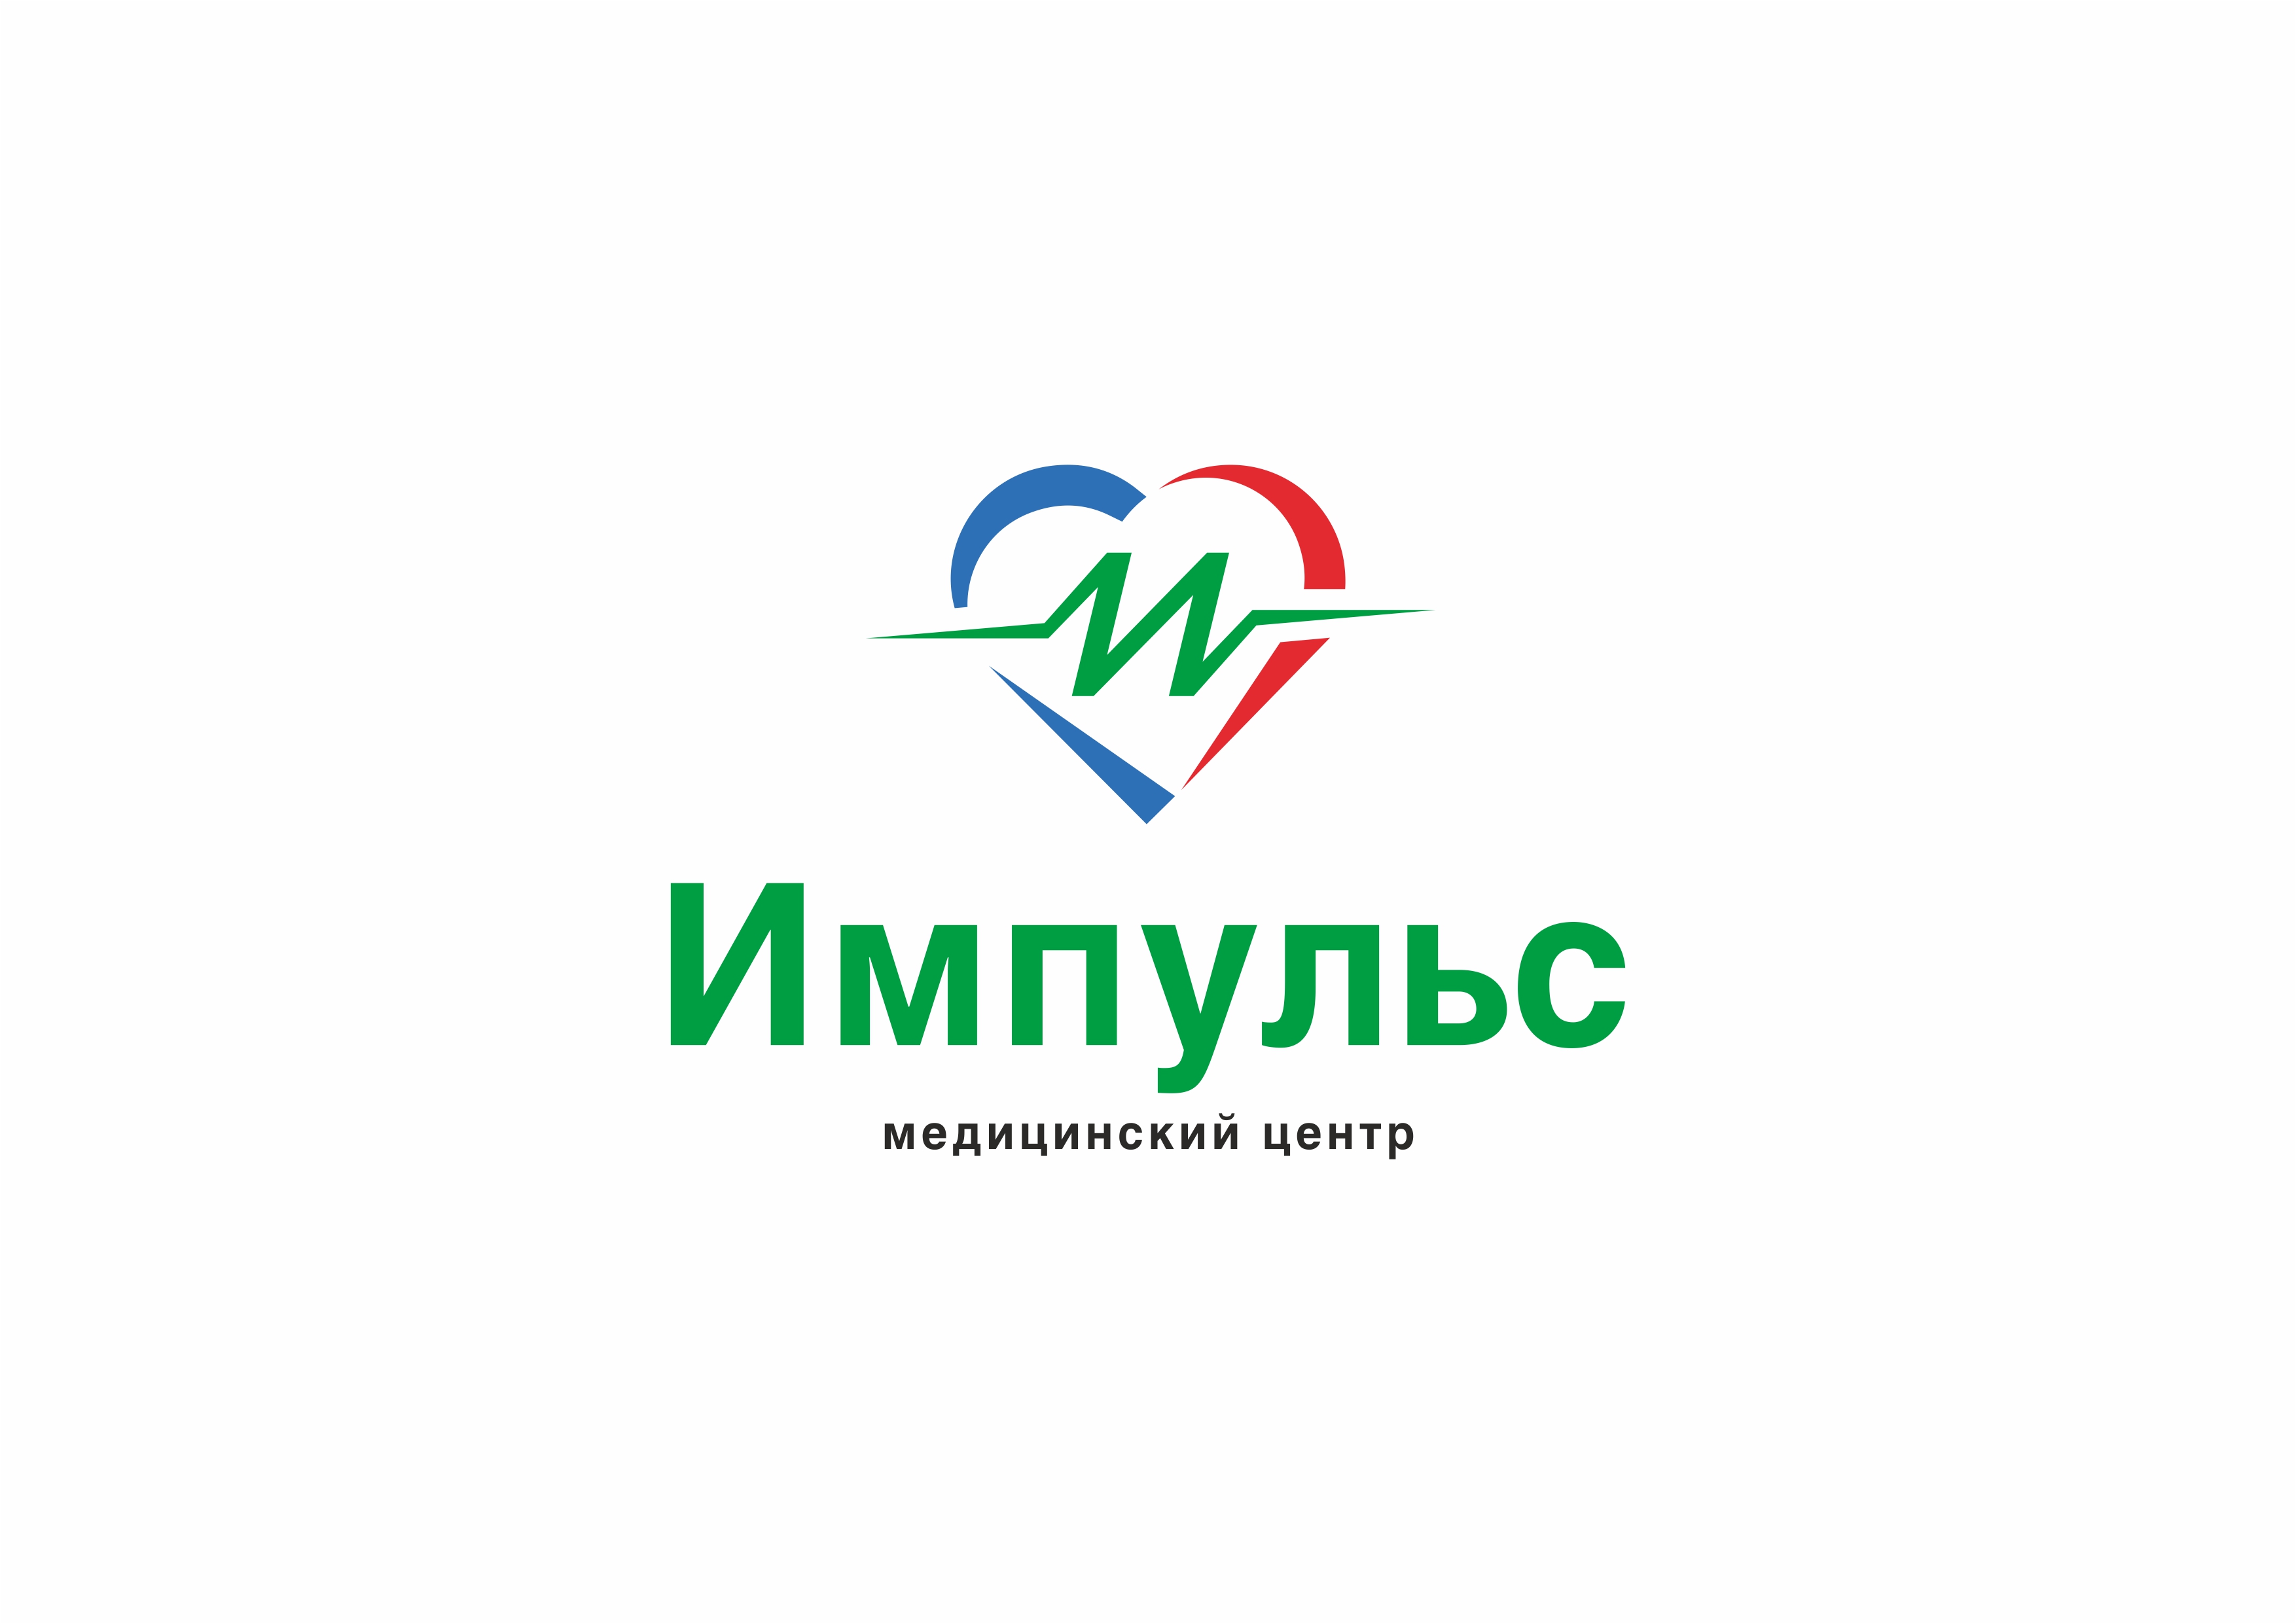 Медицинский центр импульс телефон. Мопра 8а Челябинск медицинский центр Импульс. Логотип медицинского центра. Импульс логотип. Логотипы медицинских клиник.